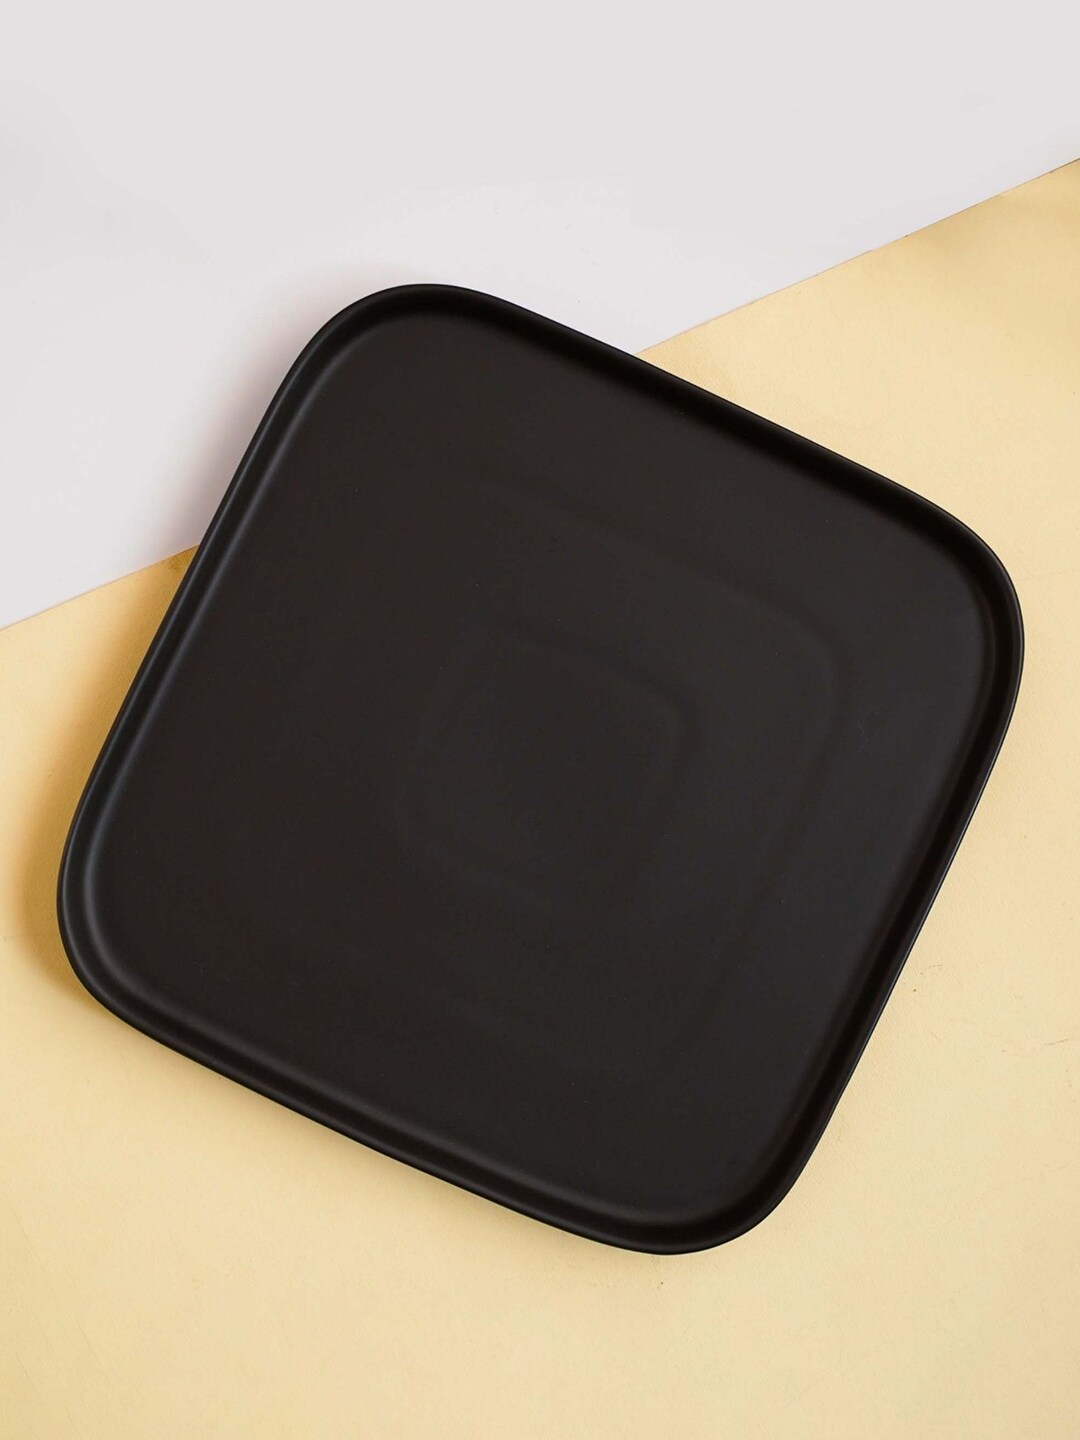 Nestasia Black Matte Square Ceramic Dinner Plate Price in India